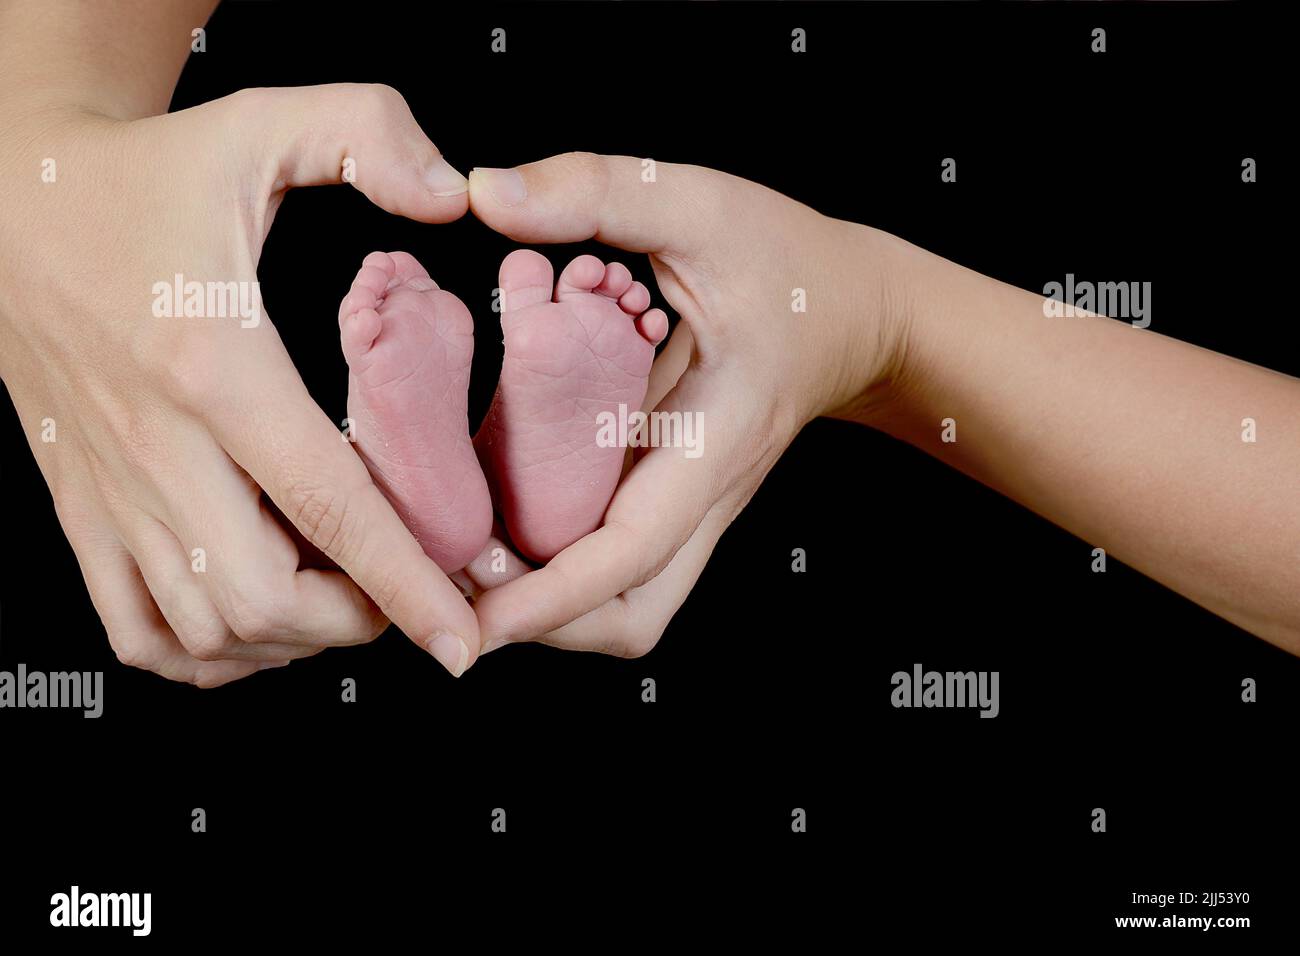 Les pieds du nouveau-né sont dans les mains en forme de cœur de sa mère. Concentrez-vous sur le pied et les mains sur la droite. Banque D'Images